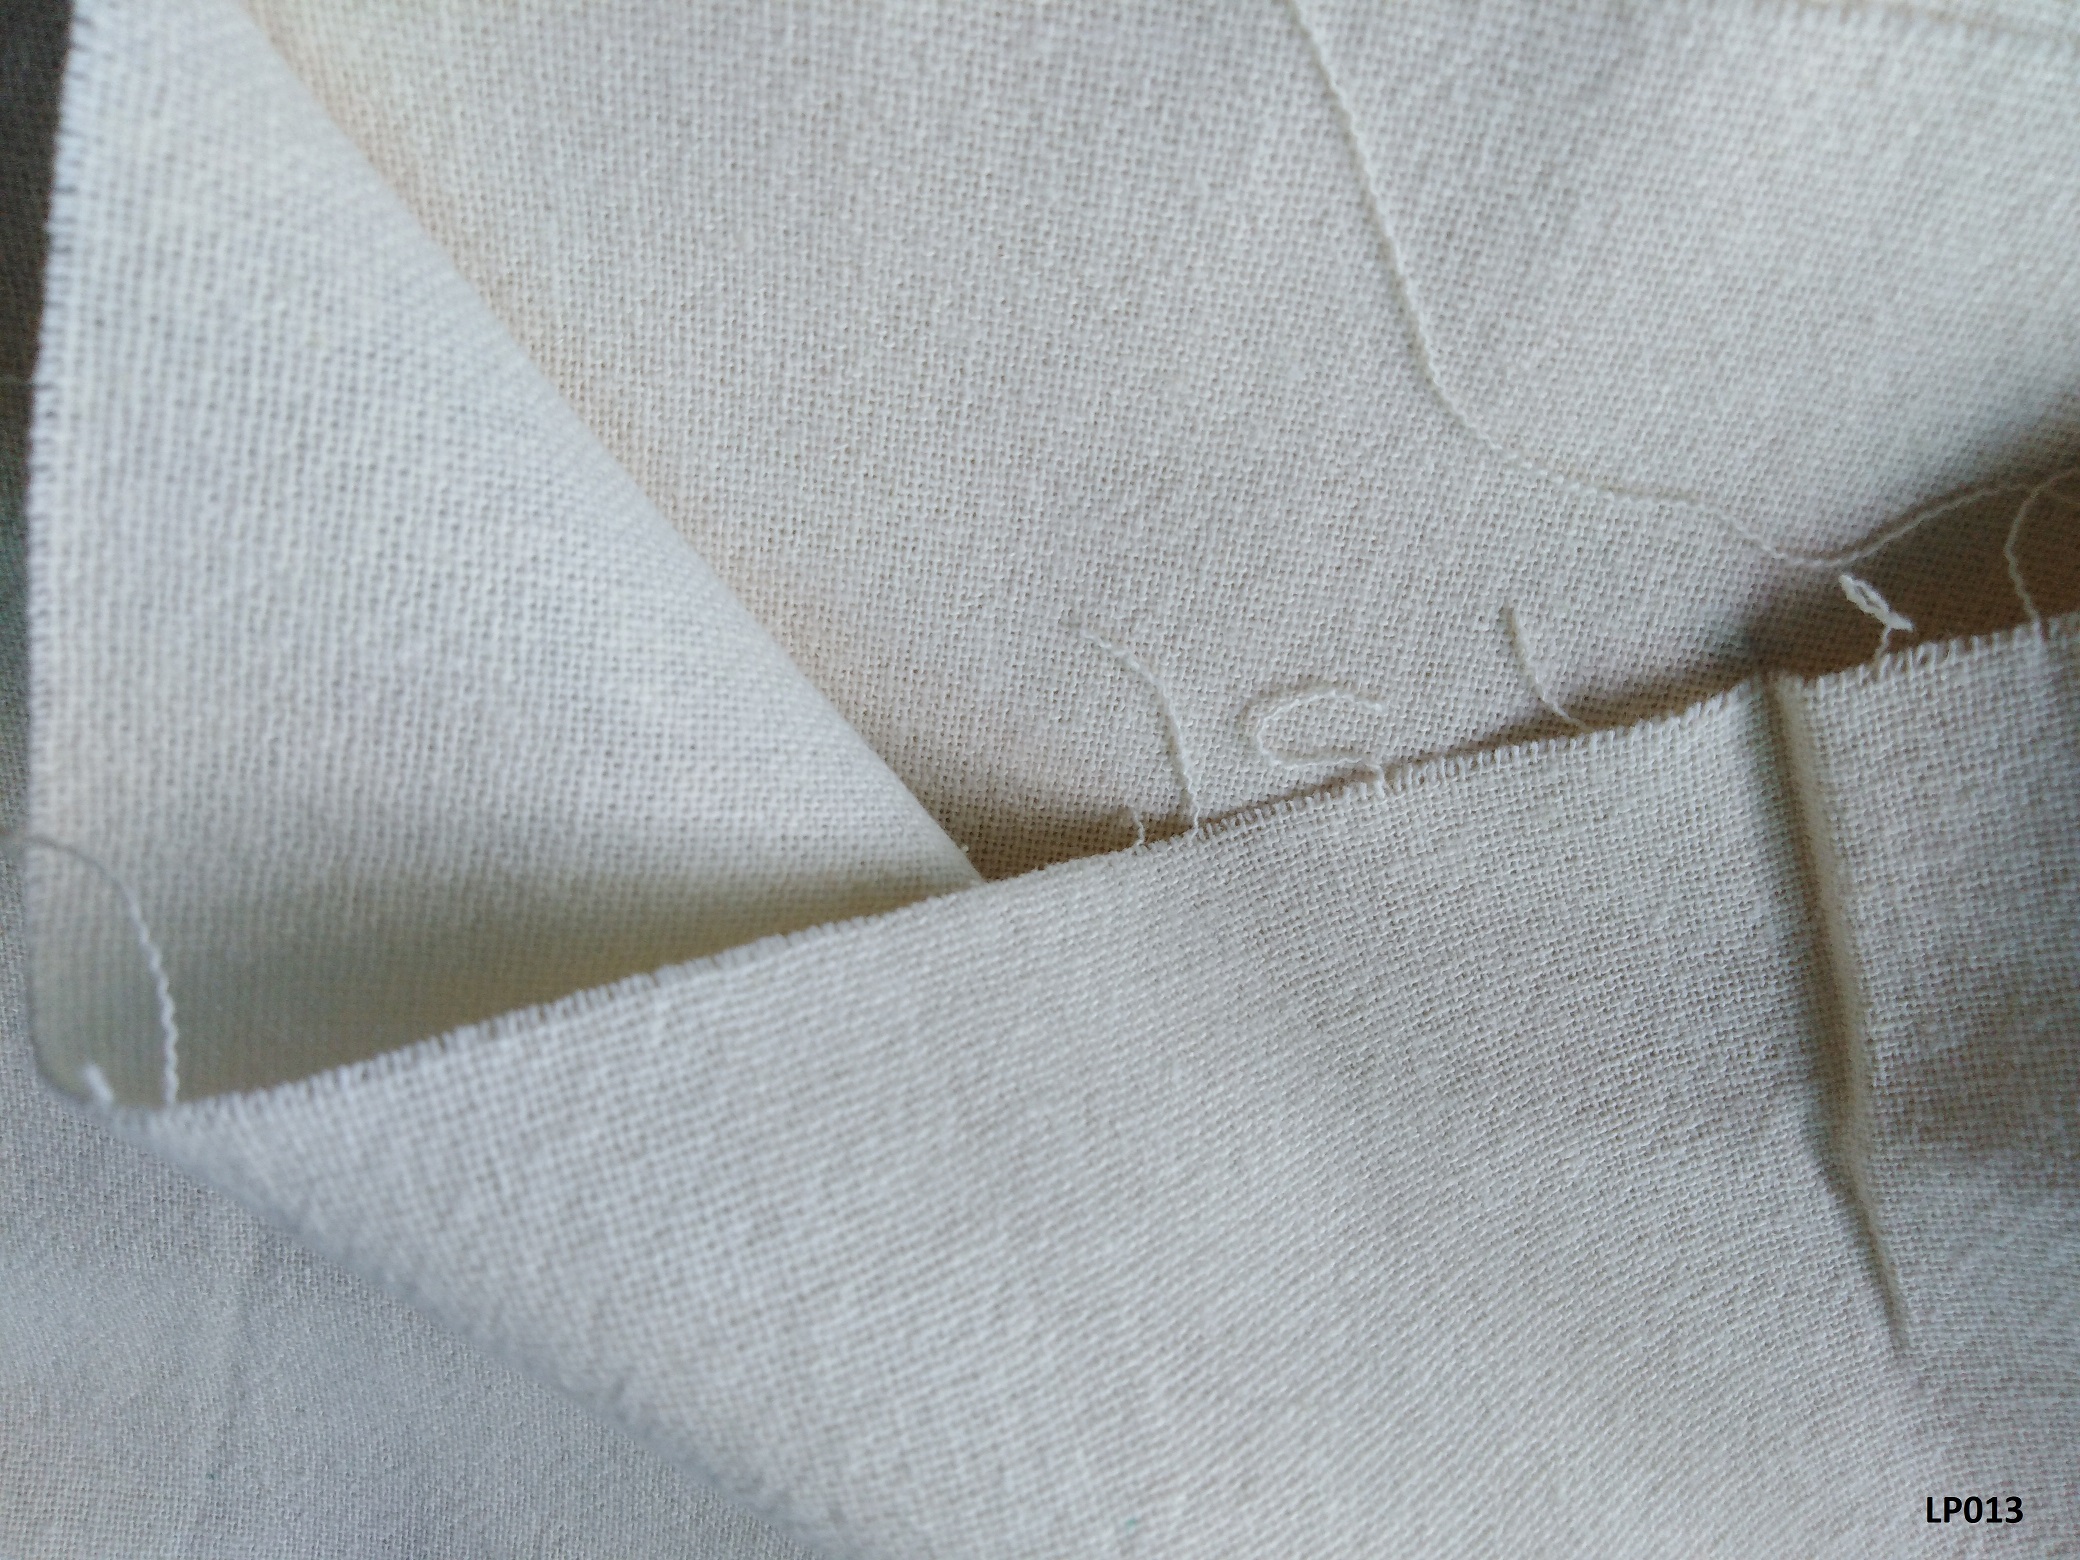 Lanna soft plain color cotton ผ้าฝ้ายเมืองสีพื้นซักนุ่ม LP013